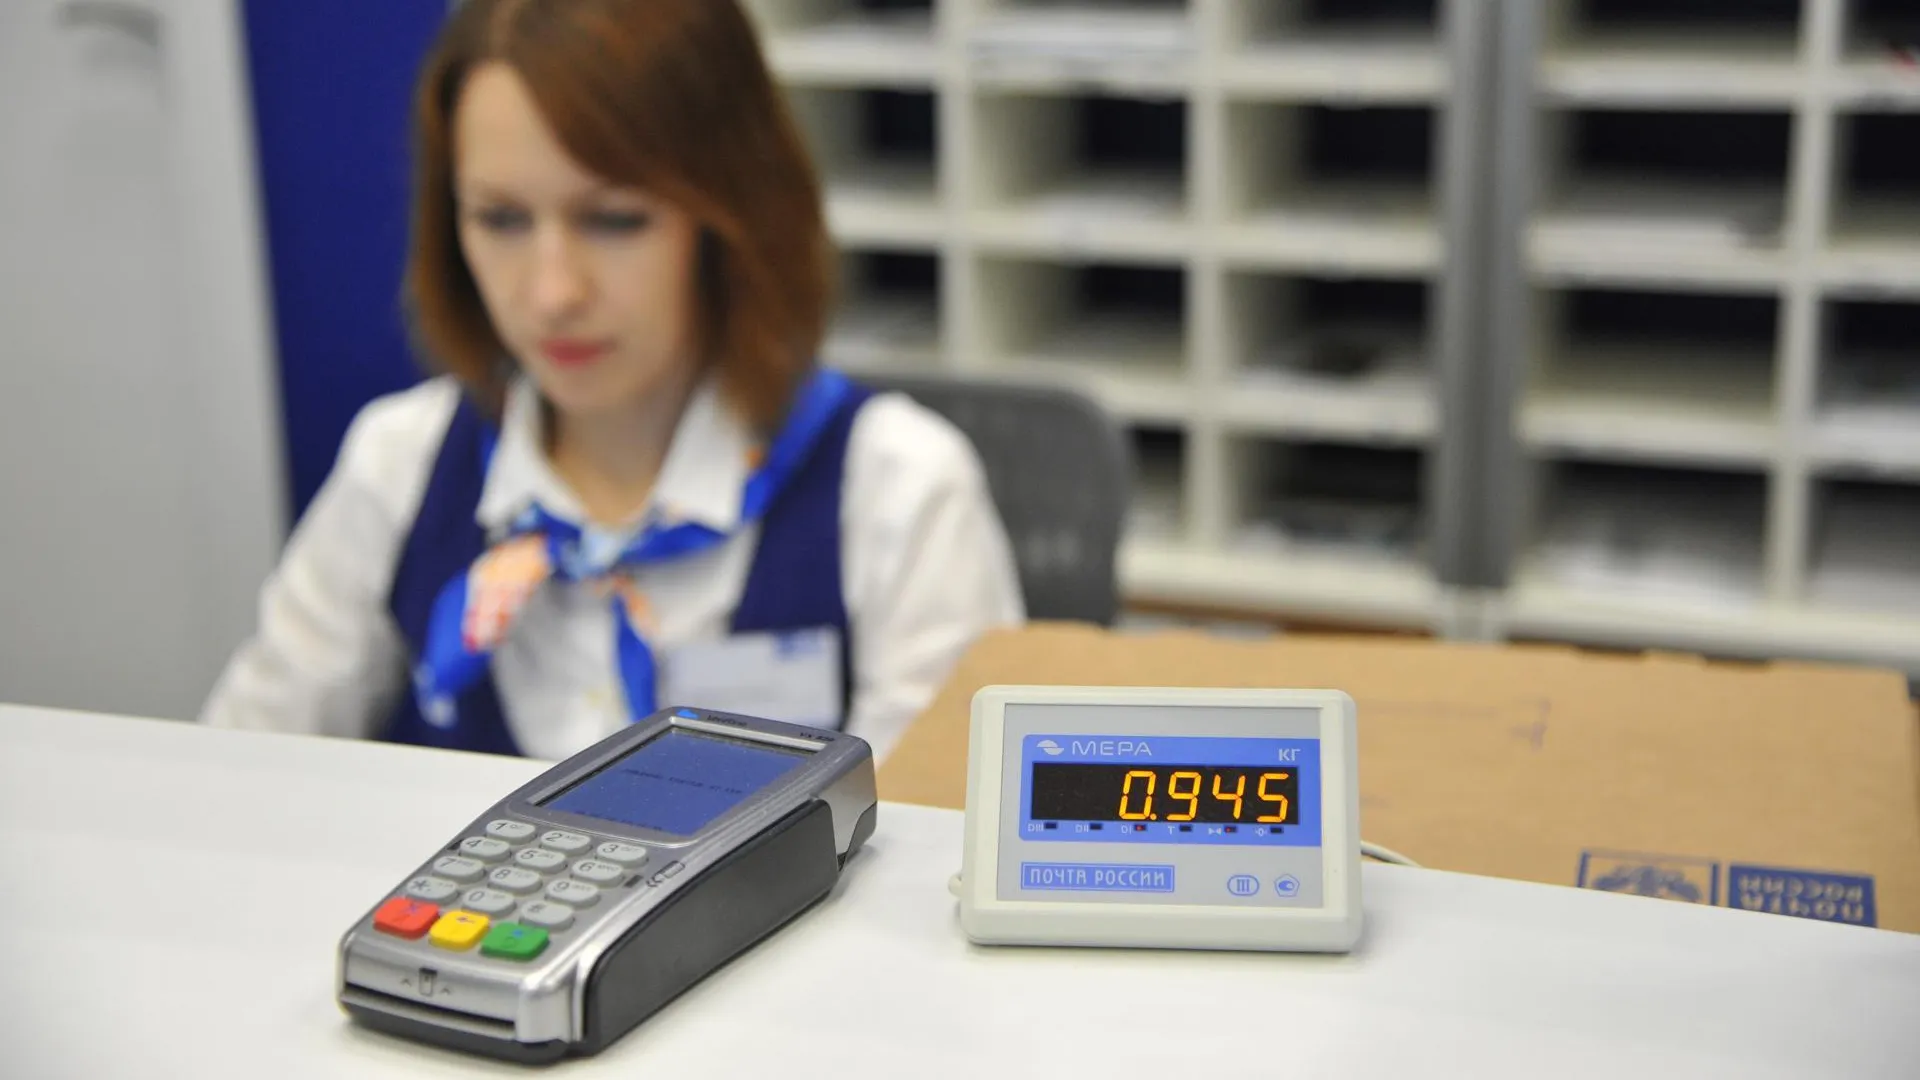 «Почта России» организует аудит расходов компании